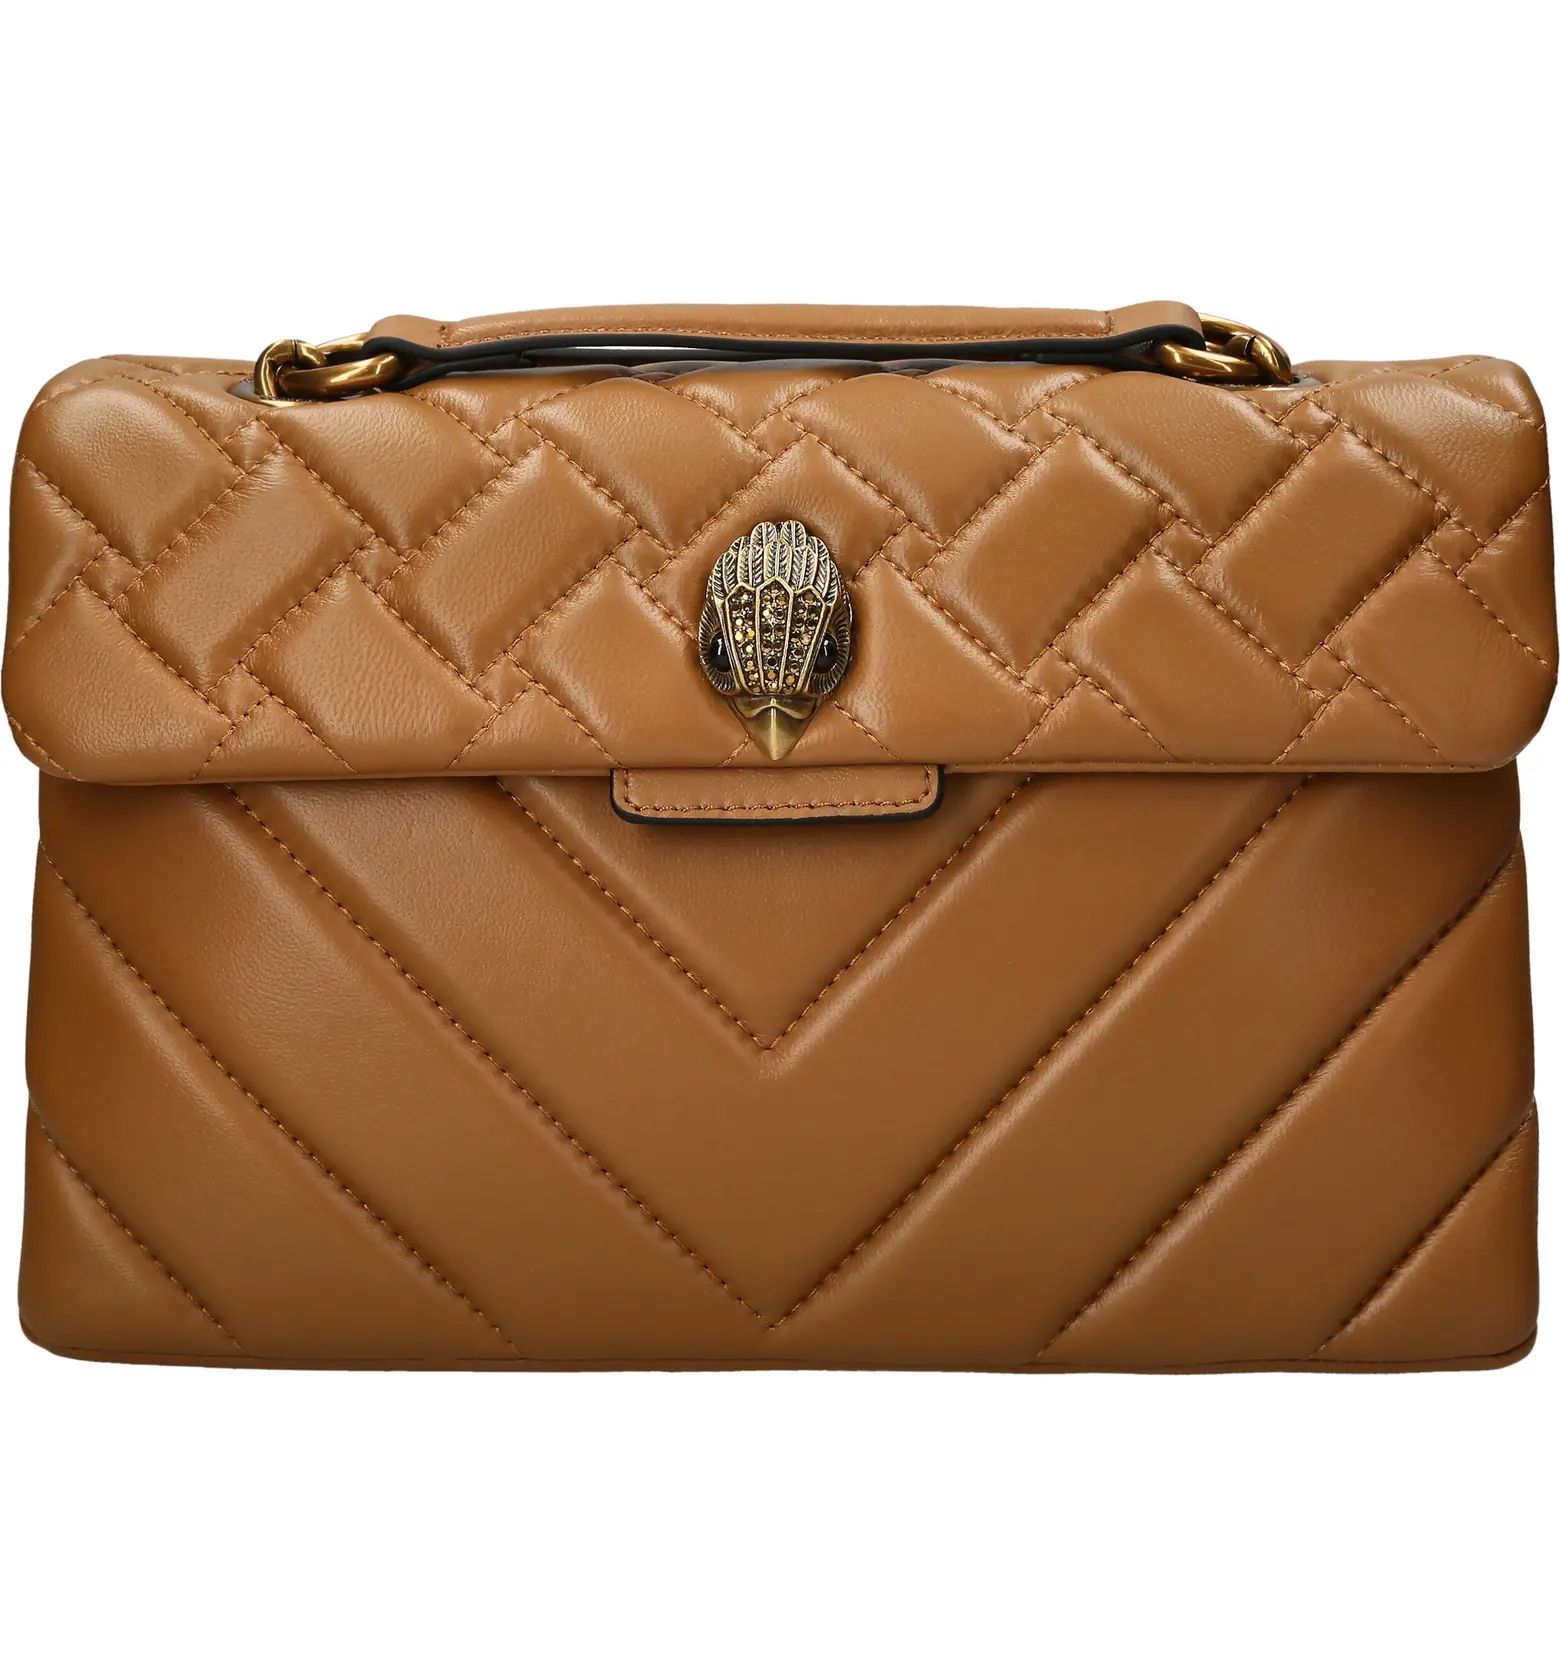 Kensington Quilted Leather Convertible Shoulder Bag | Nordstrom